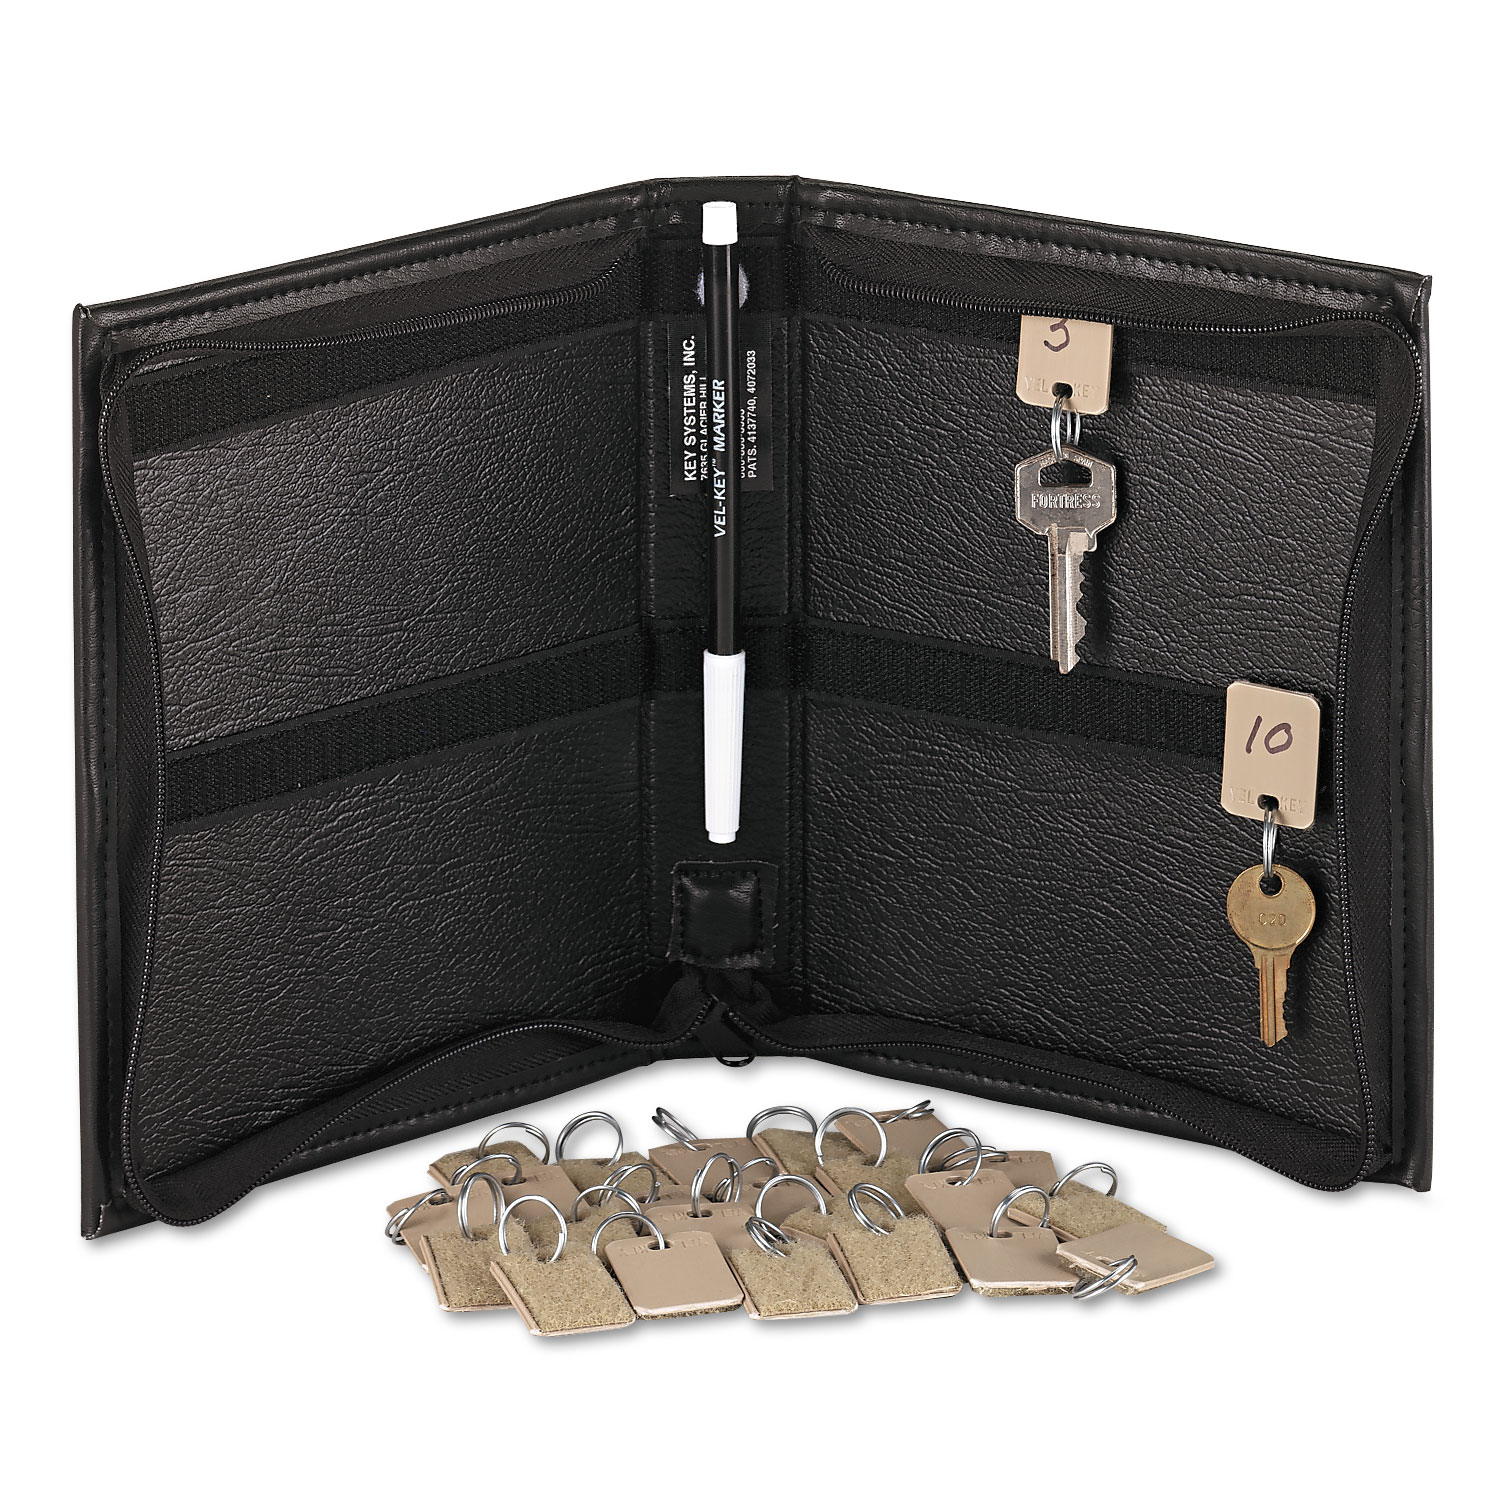 Security-Backed Zippered Case, 24-Key,Vinyl, Black, 7 x 1 x 8 3/8